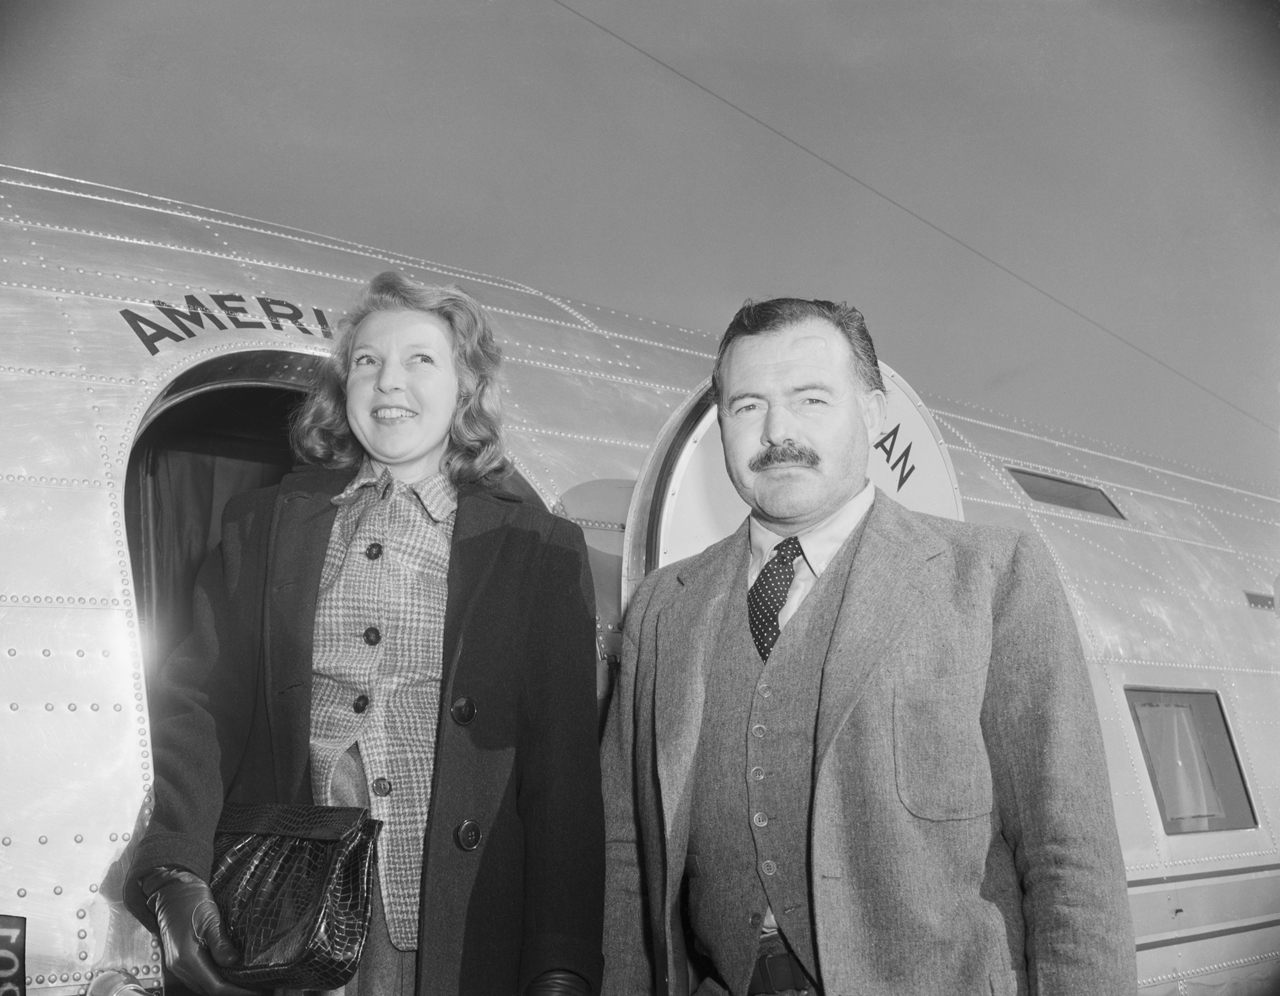 Gellhorn and Hemingway in 1945.